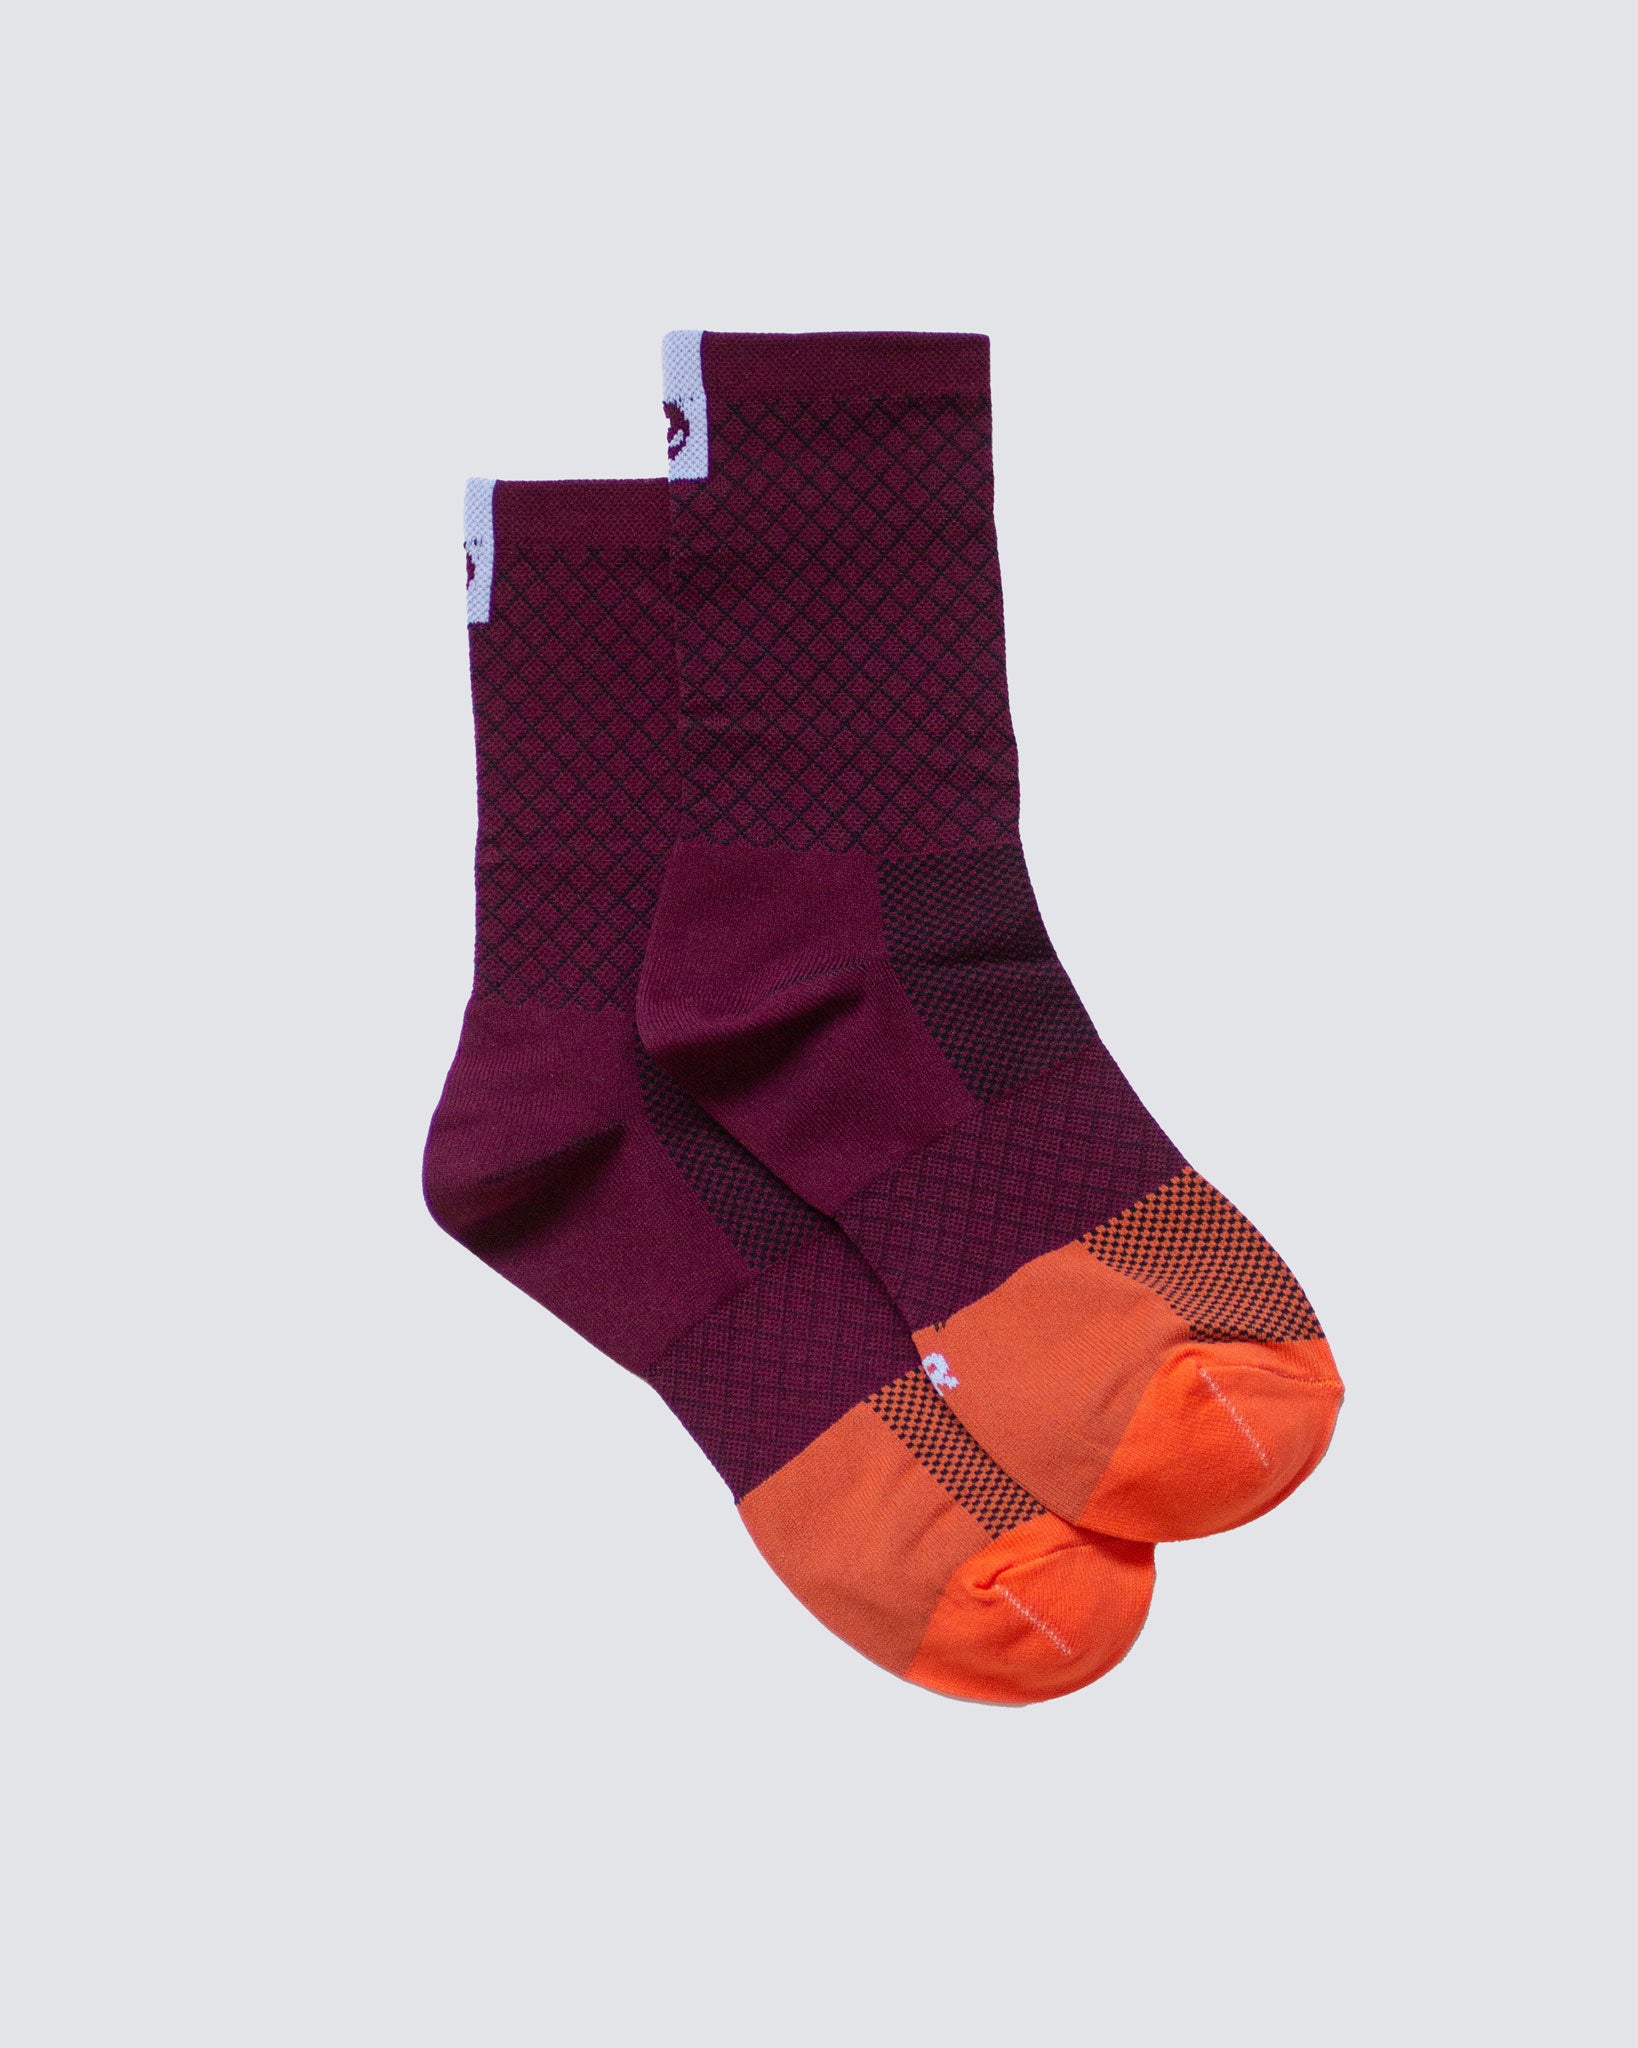 purple socks against white background